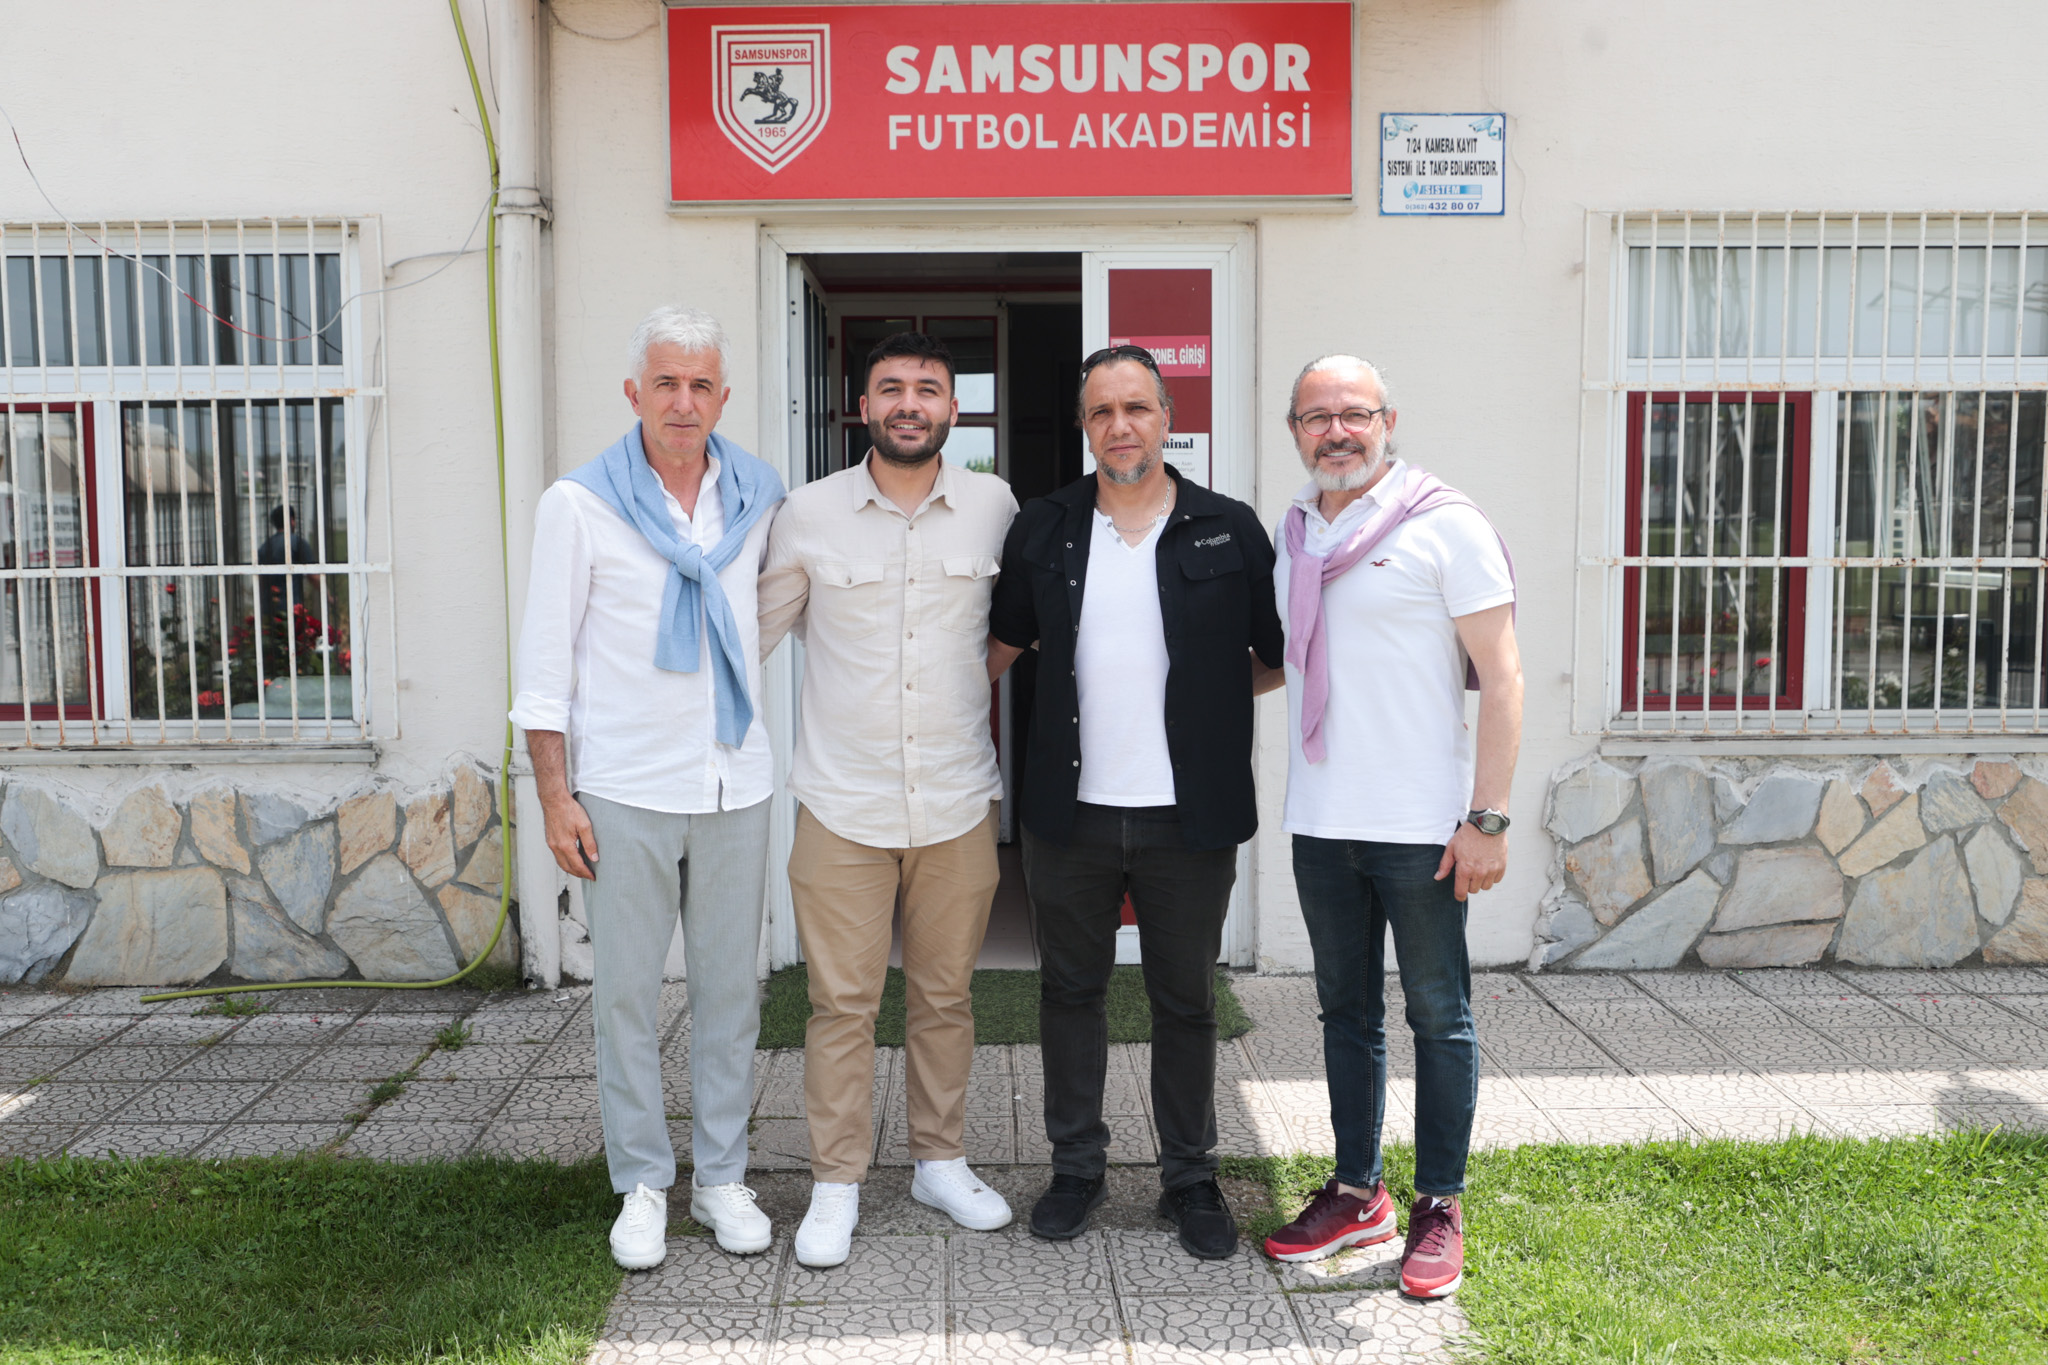 Bursa ve Gaziantep’e Yılport Samsunspor Futbol Akademisi